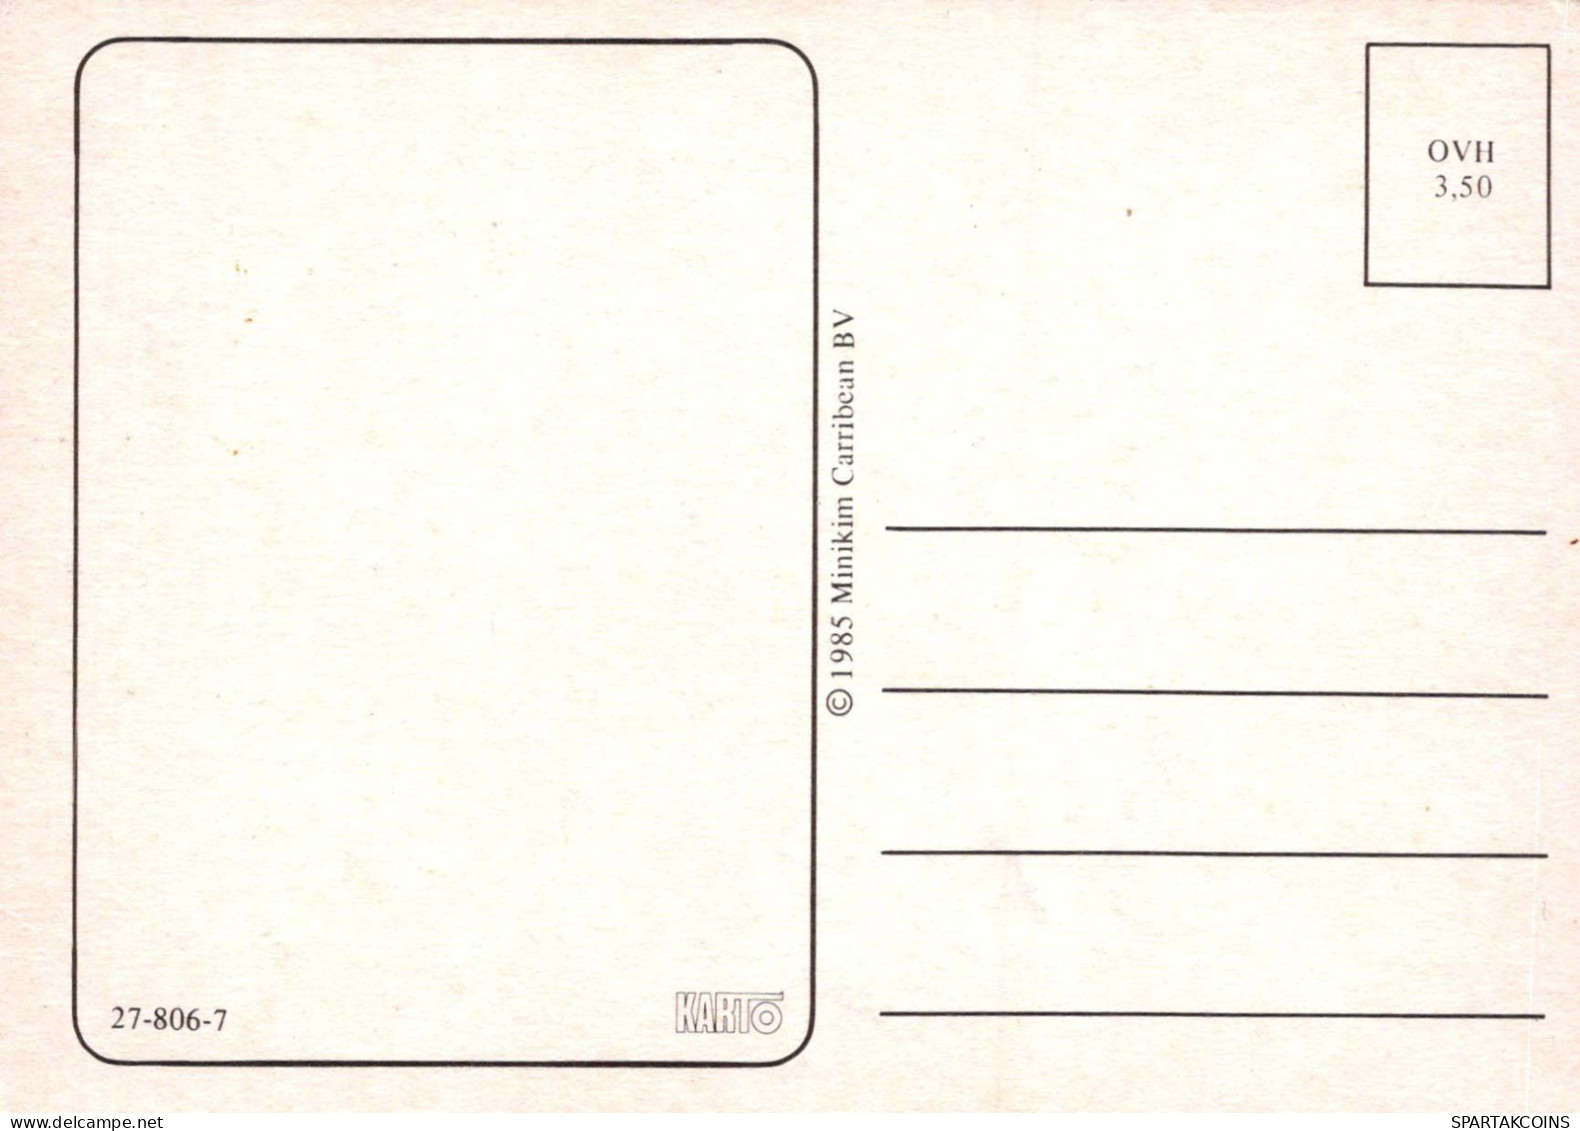 NIÑOS HUMOR Vintage Tarjeta Postal CPSM #PBV404.A - Humorous Cards